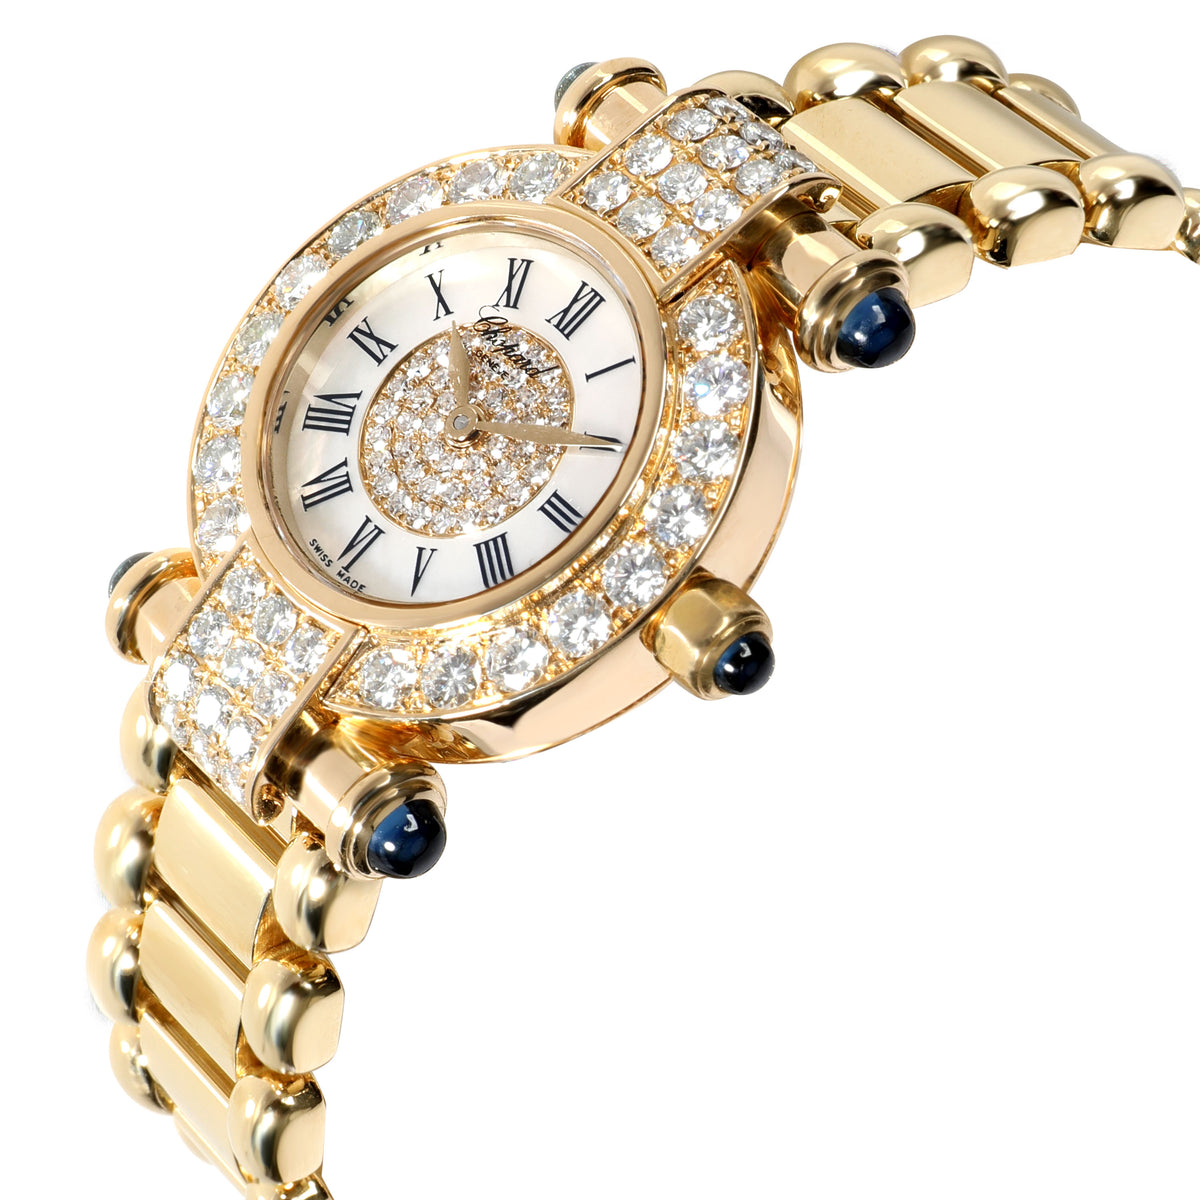 Chopard Imperiale 39/3168-23 Women's Watch in 18kt Yellow Gold